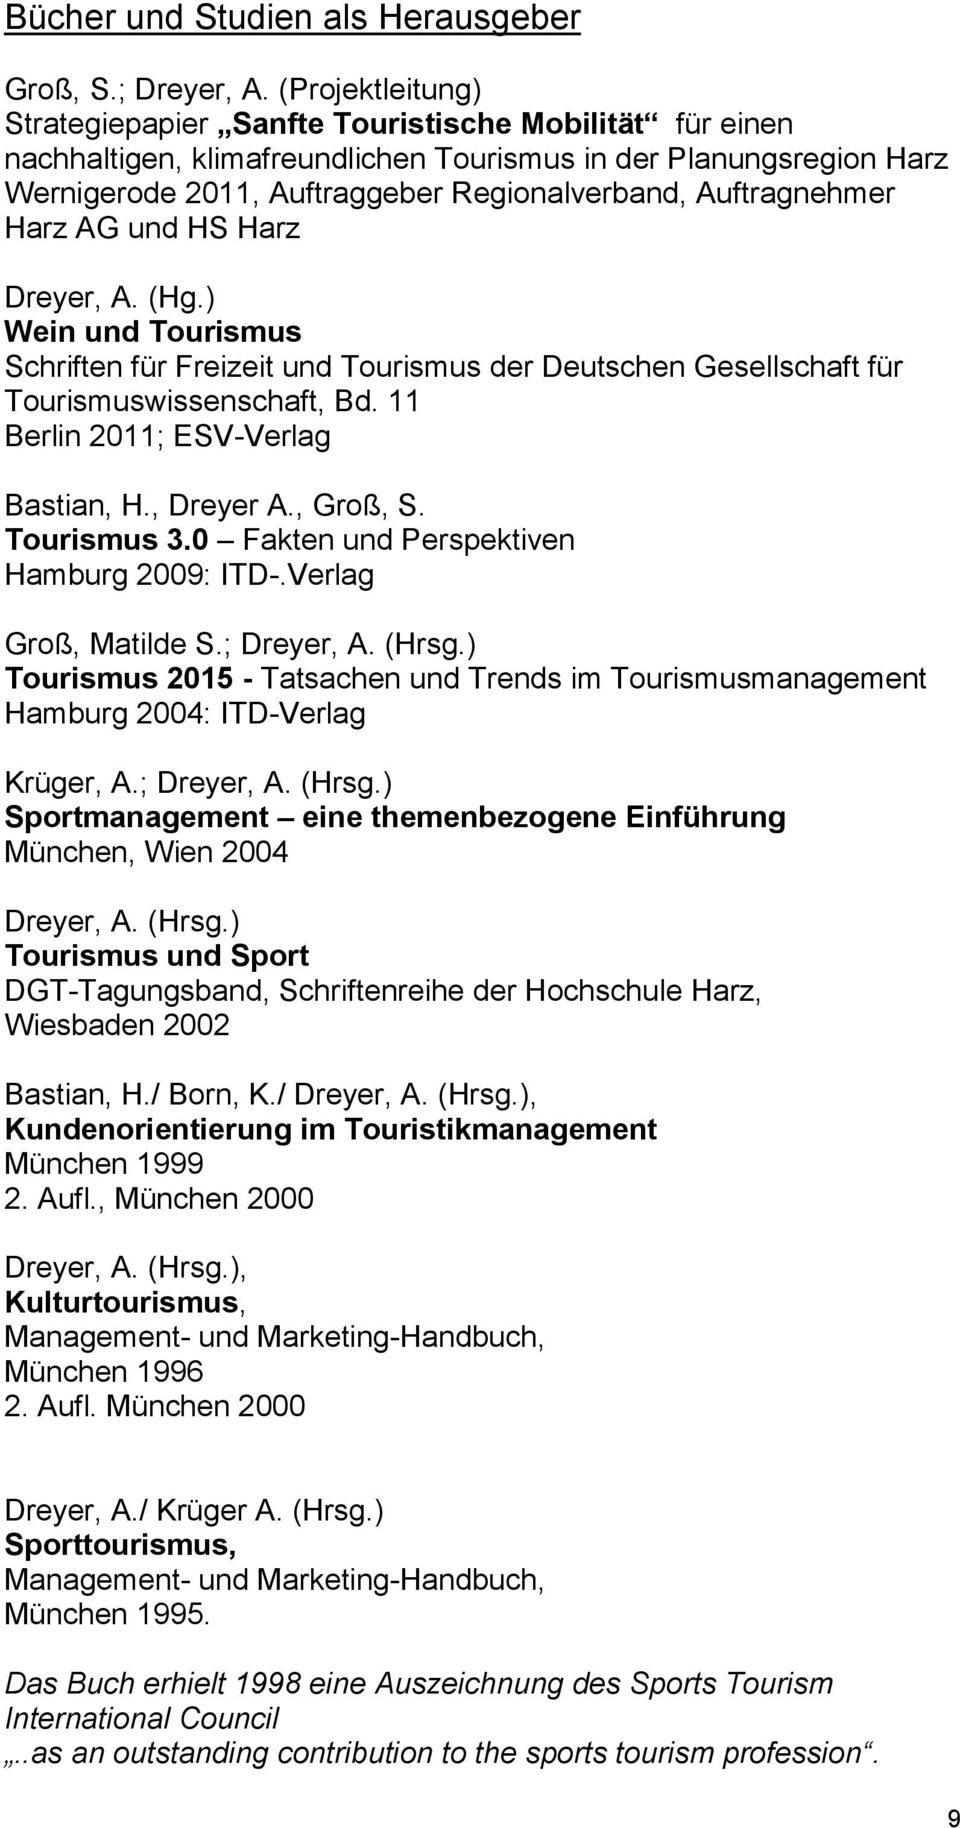 Auftragnehmer Harz AG und HS Harz (Hg.) Wein und Tourismus Schriften für Freizeit und Tourismus der Deutschen Gesellschaft für Tourismuswissenschaft, Bd. 11 Berlin 2011; ESV-Verlag Bastian, H.